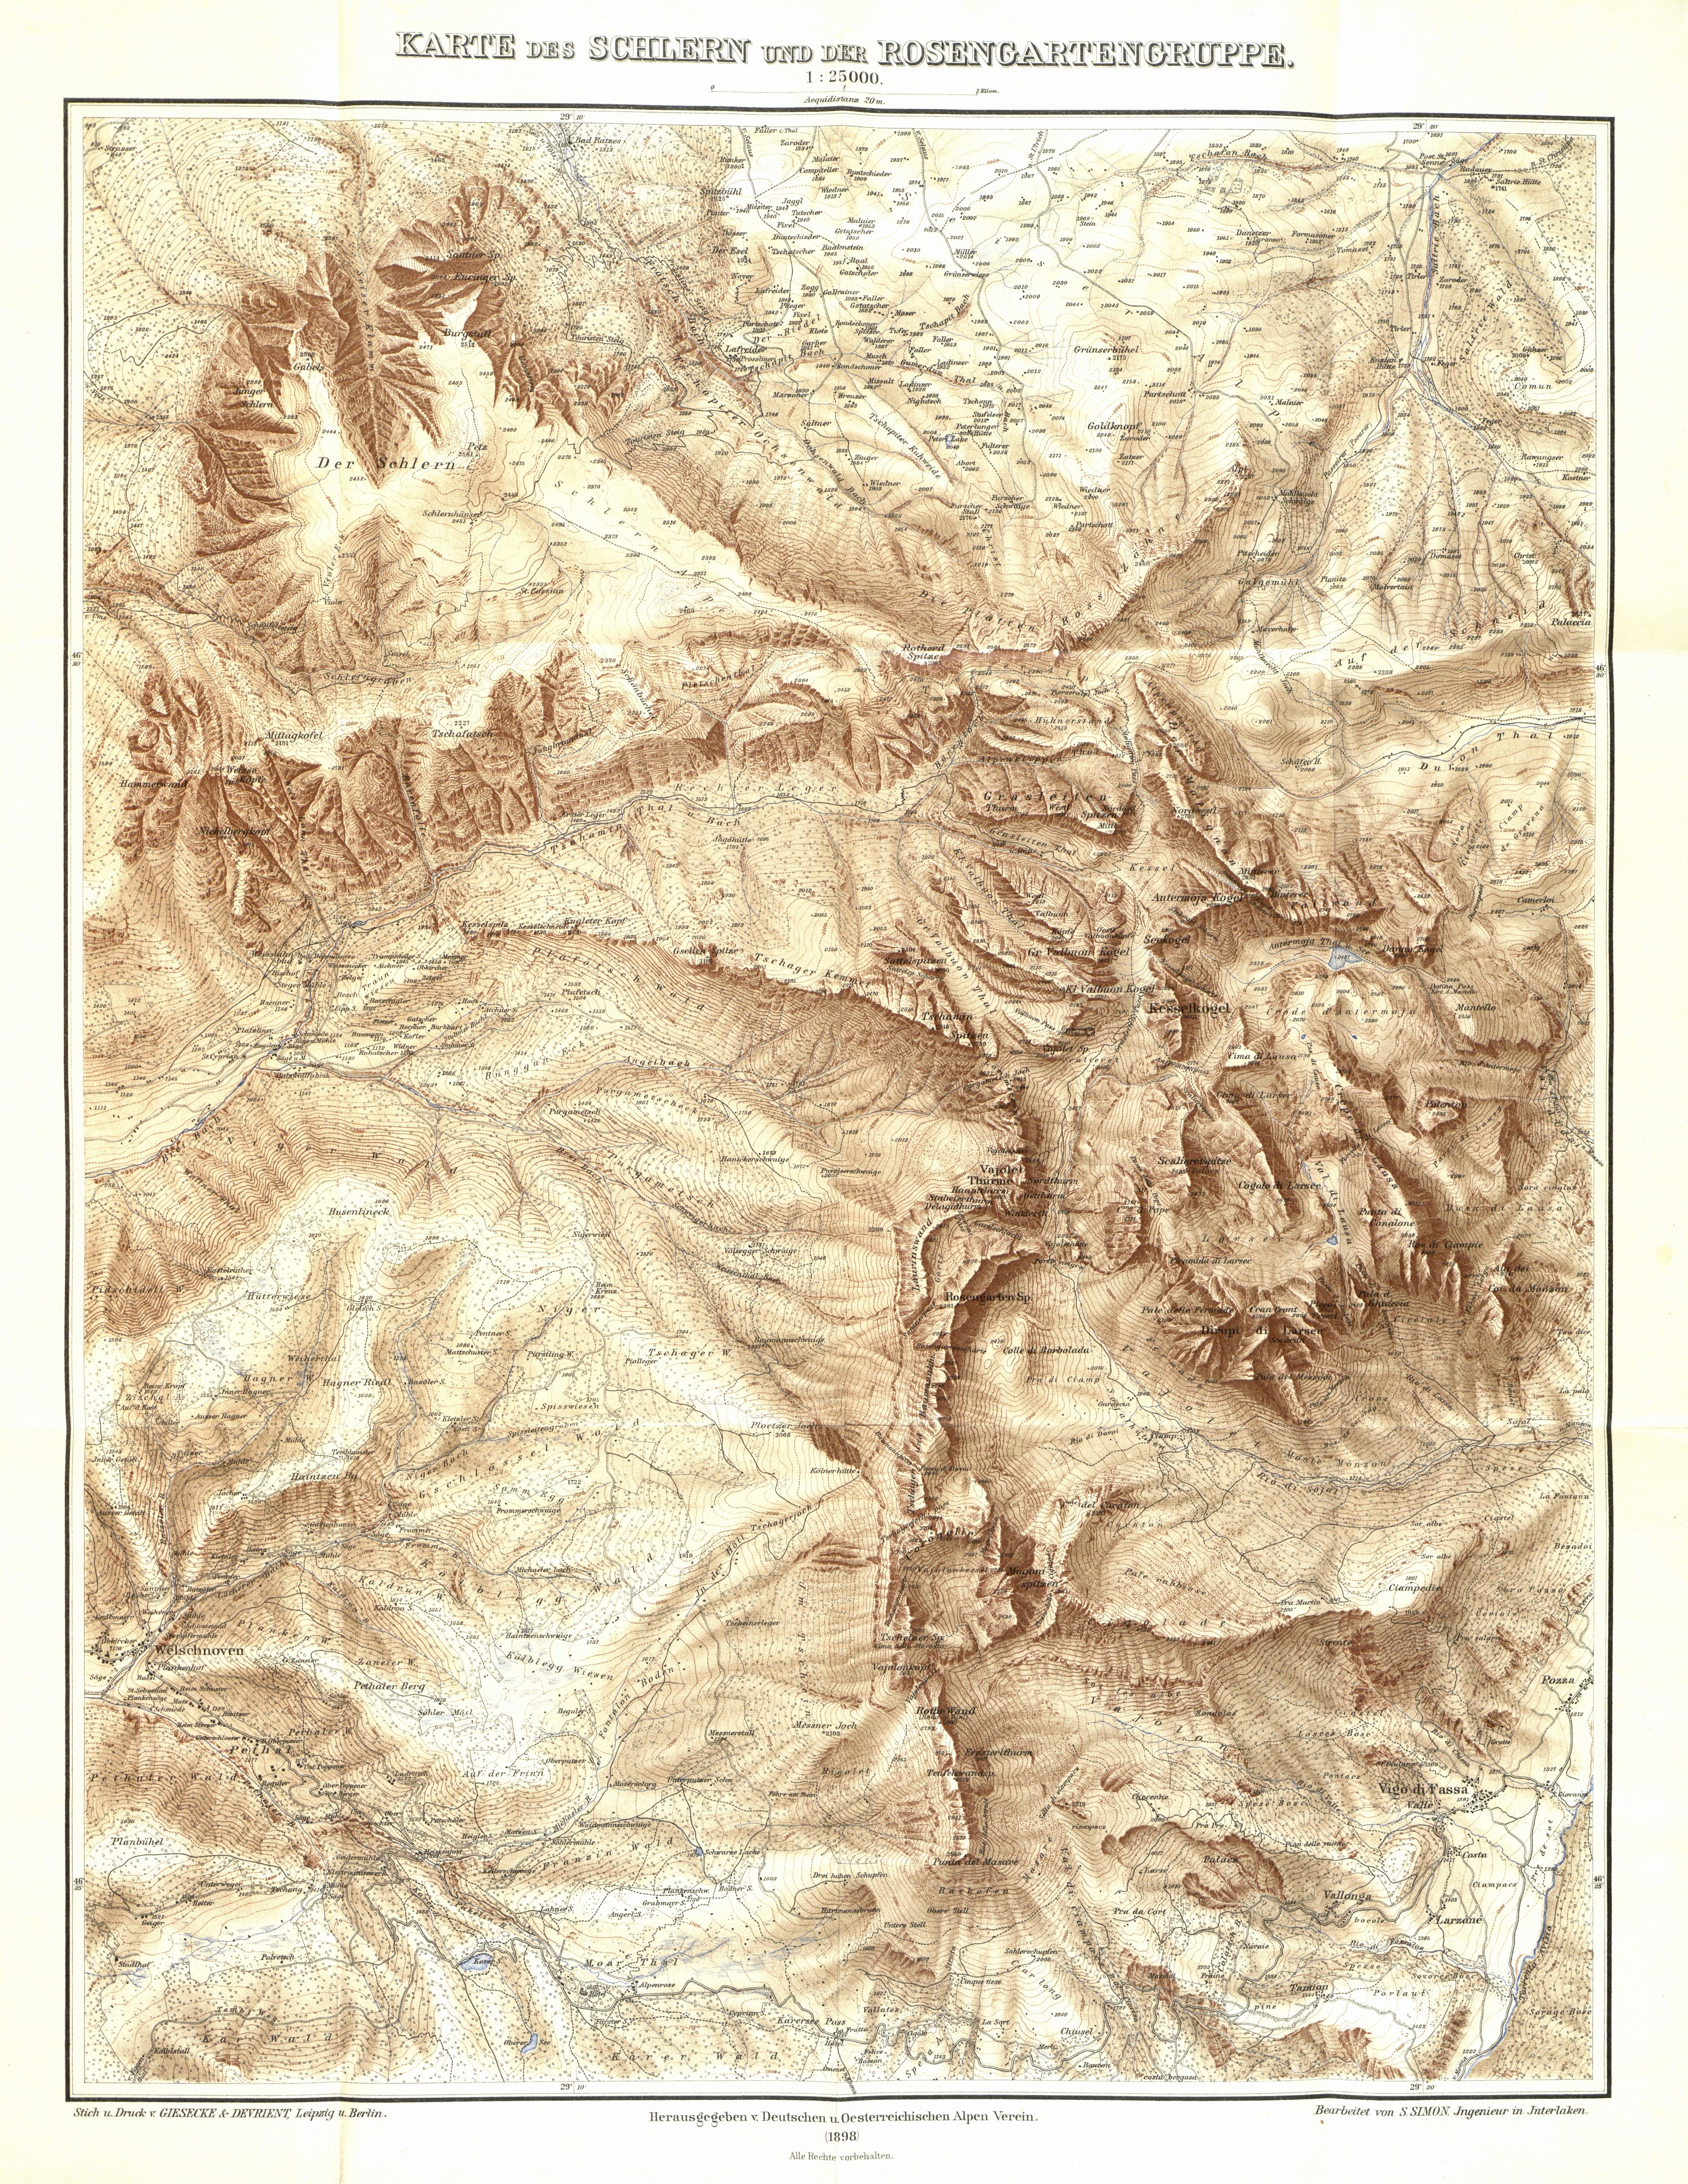 Karte des Schlern und der Rosengartengruppe